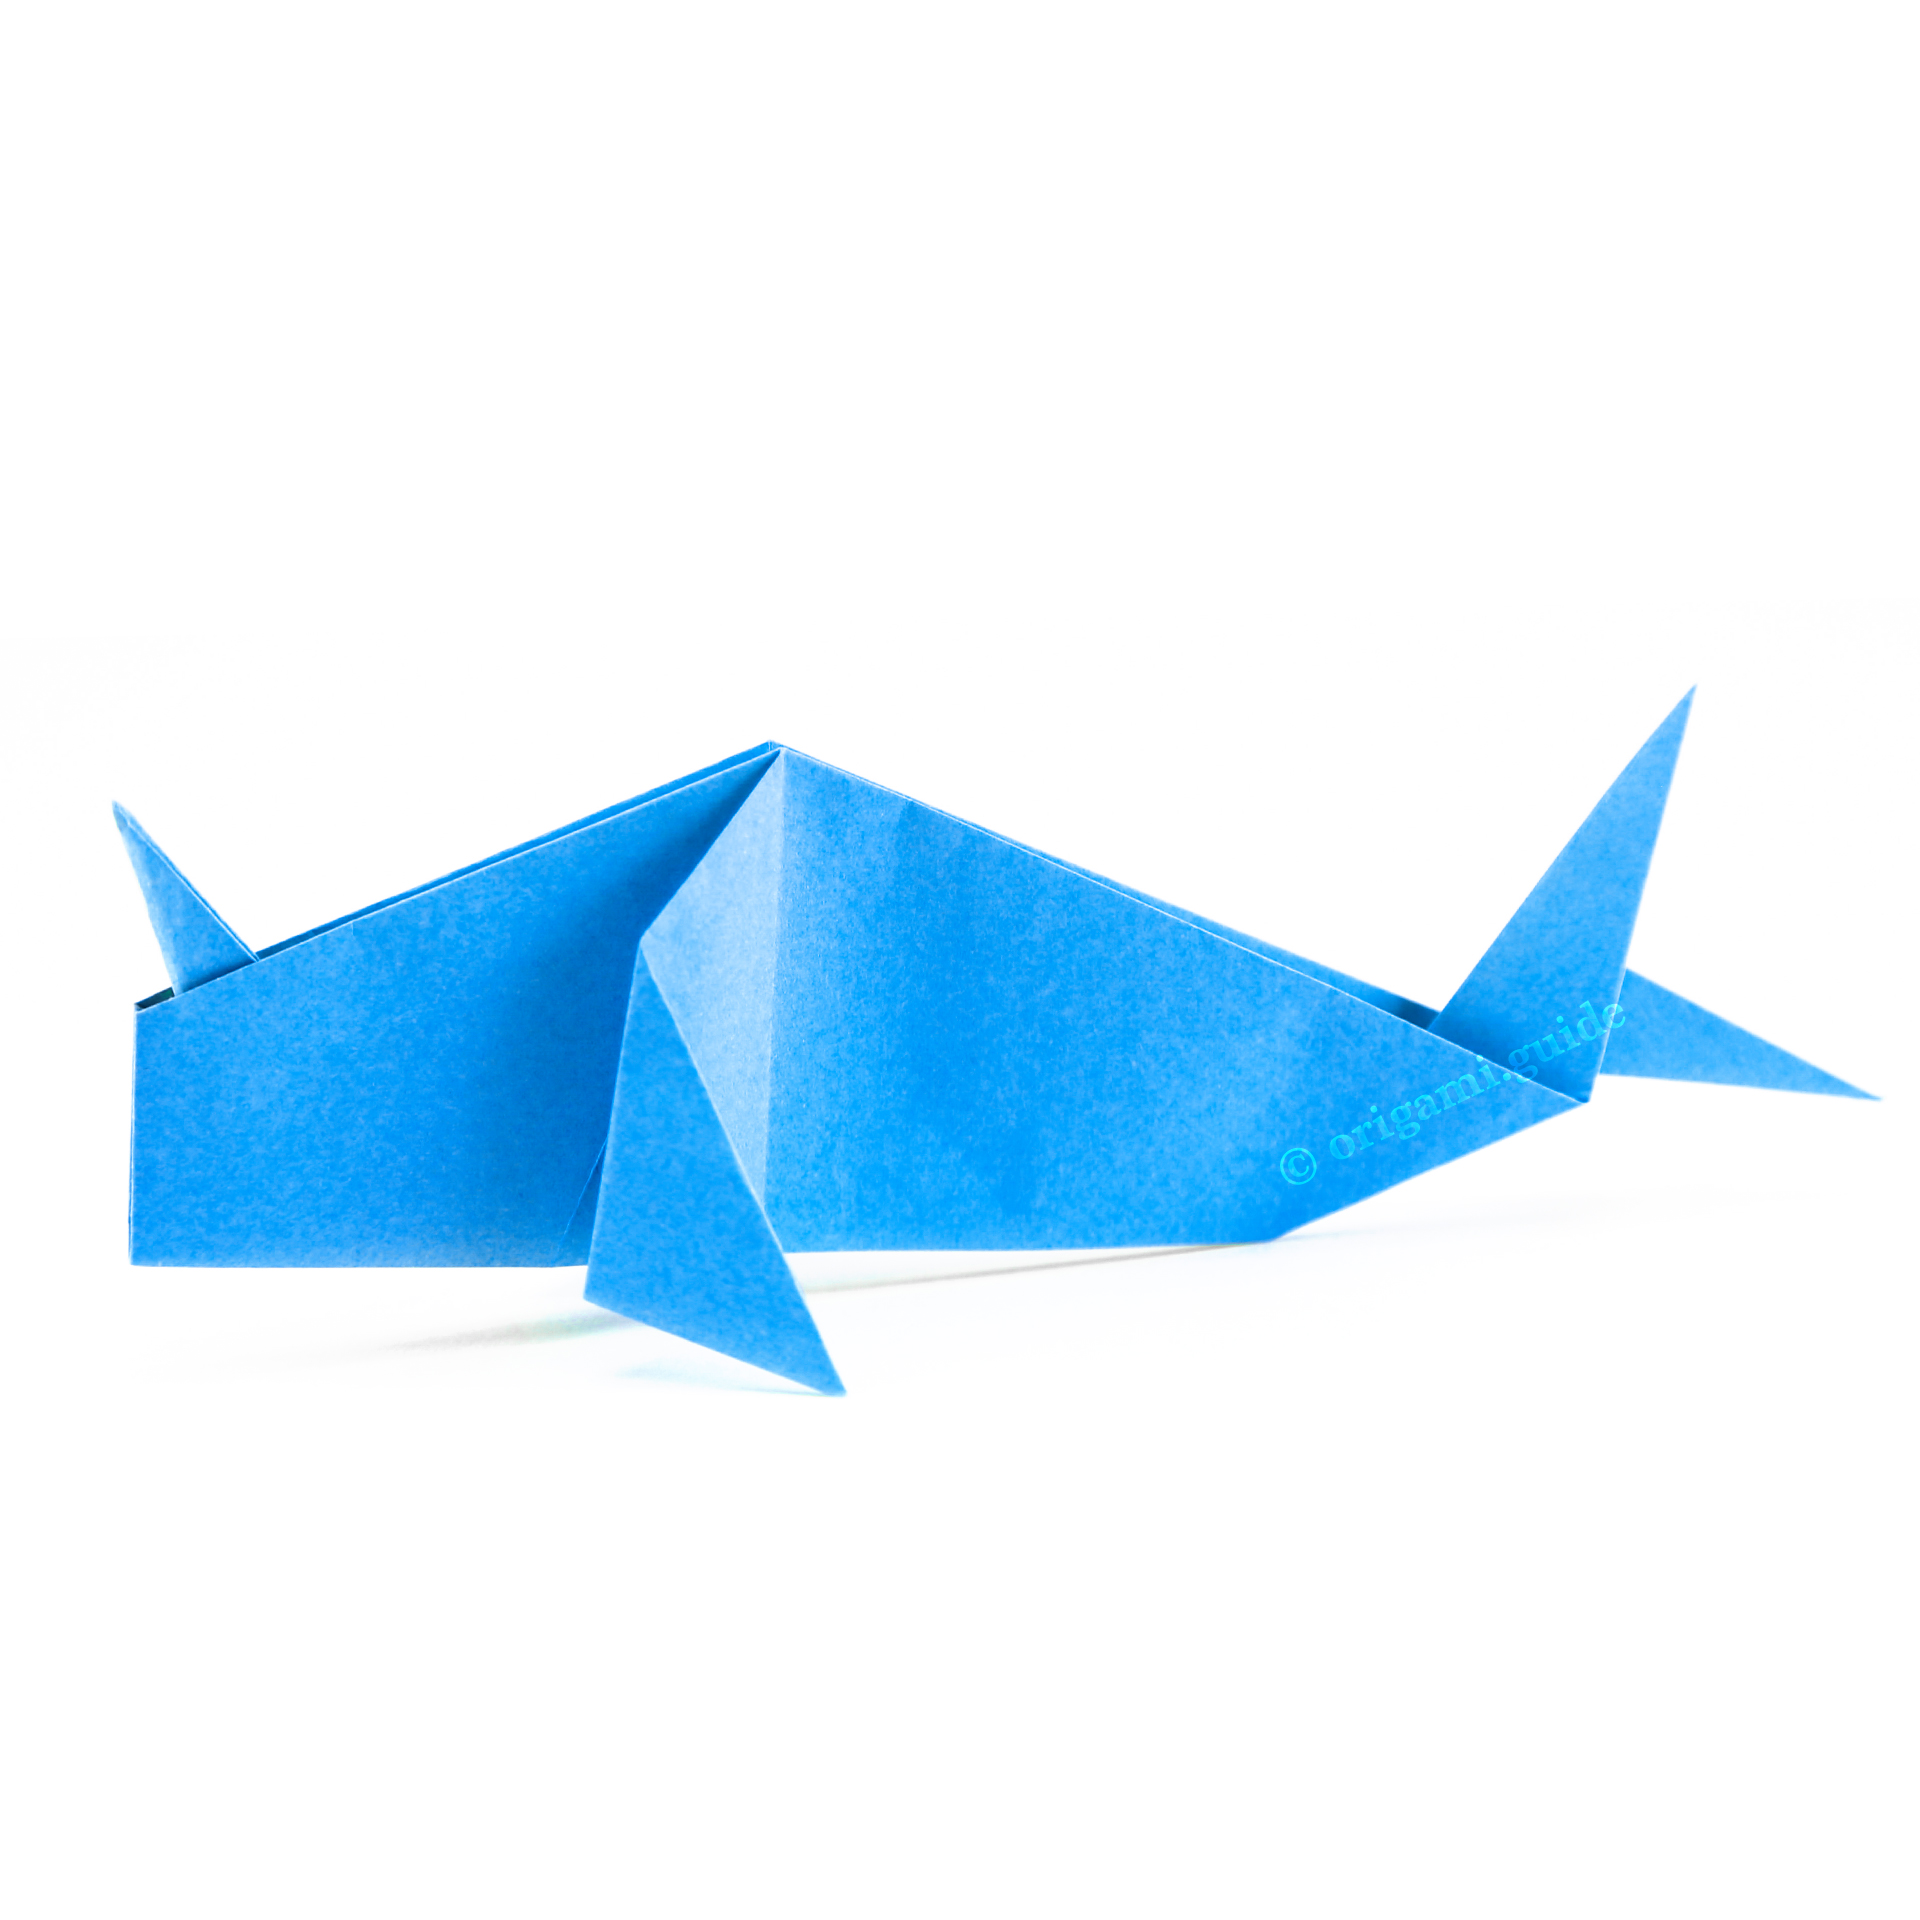 Origami Sea Creatures - Origami Guide